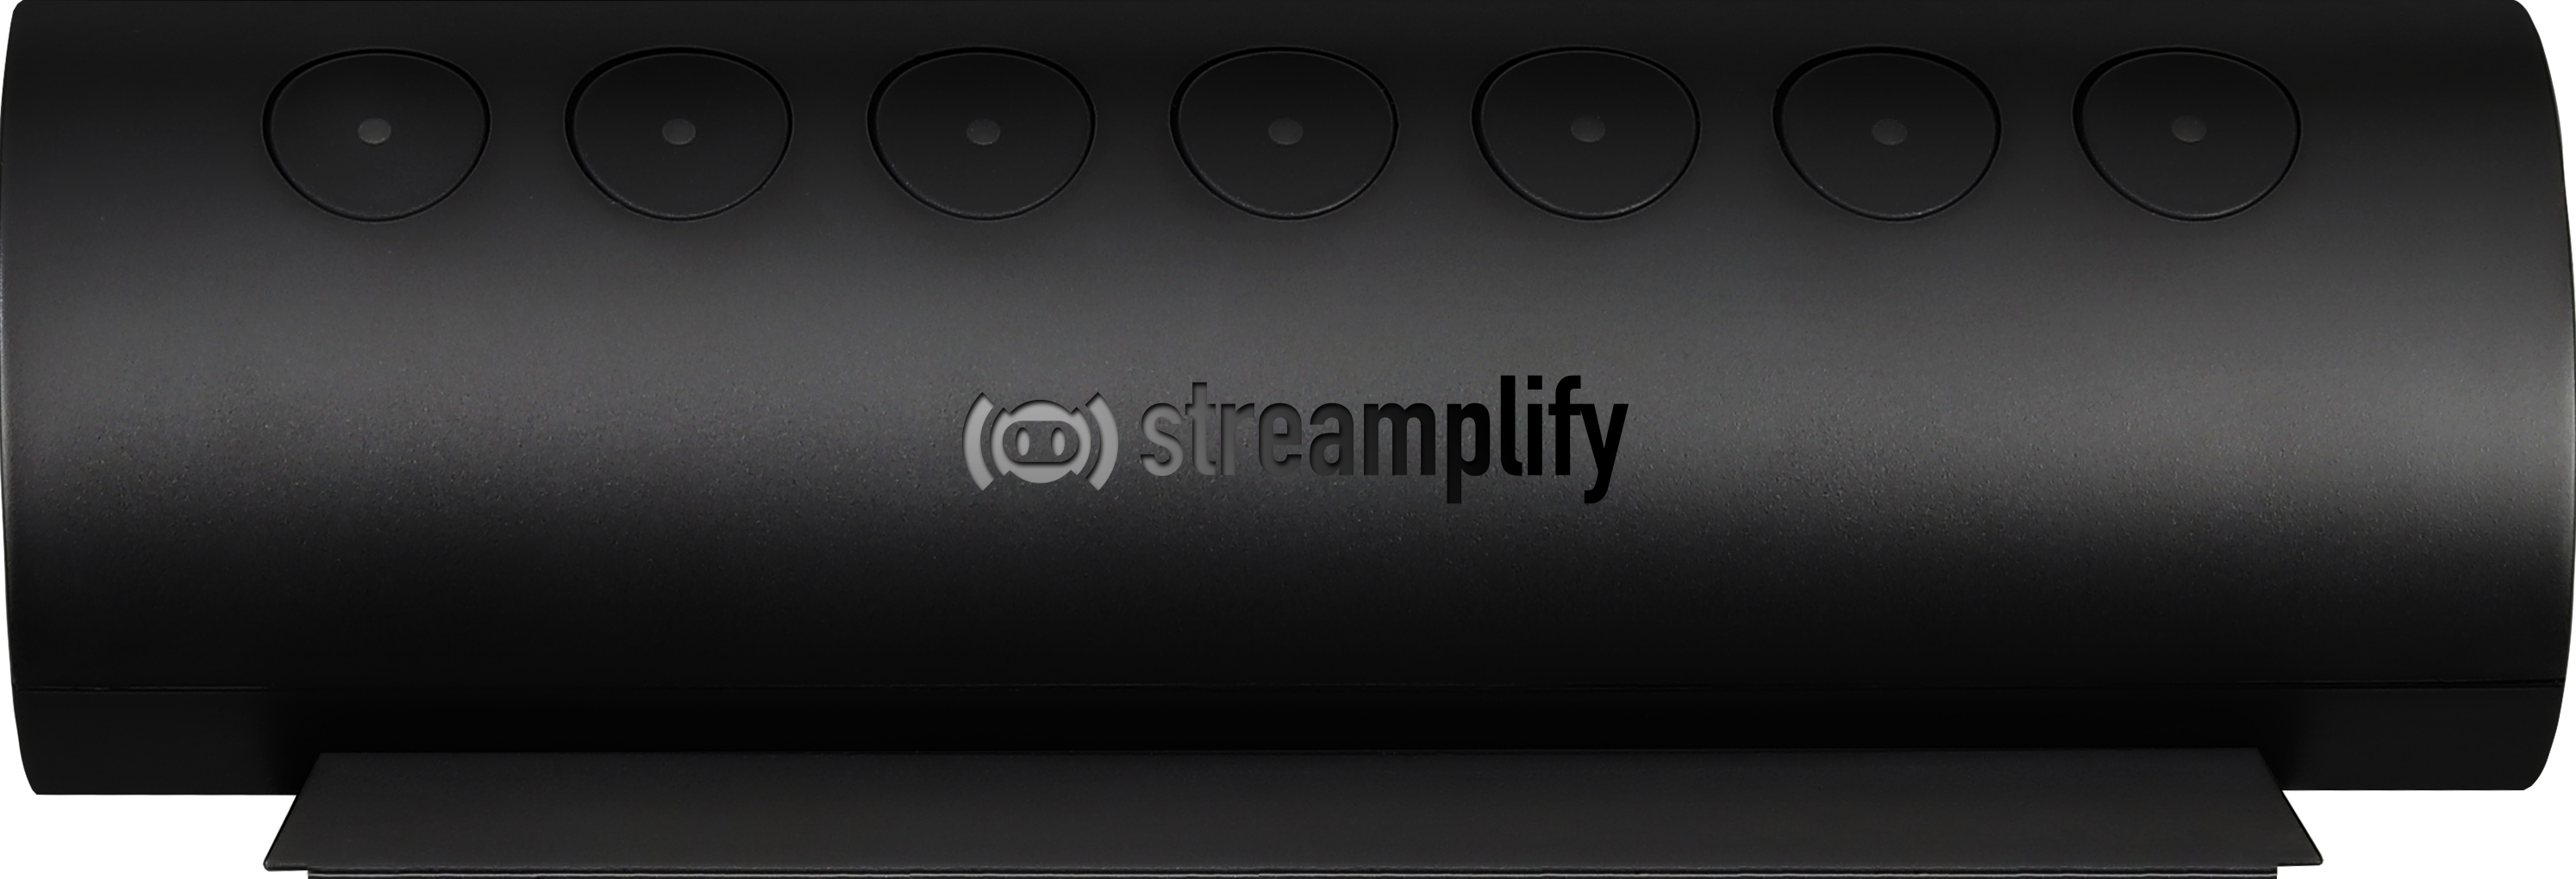 Streamplify HUB CTRL 7 slot, RGB, 12V, EU power cord - black